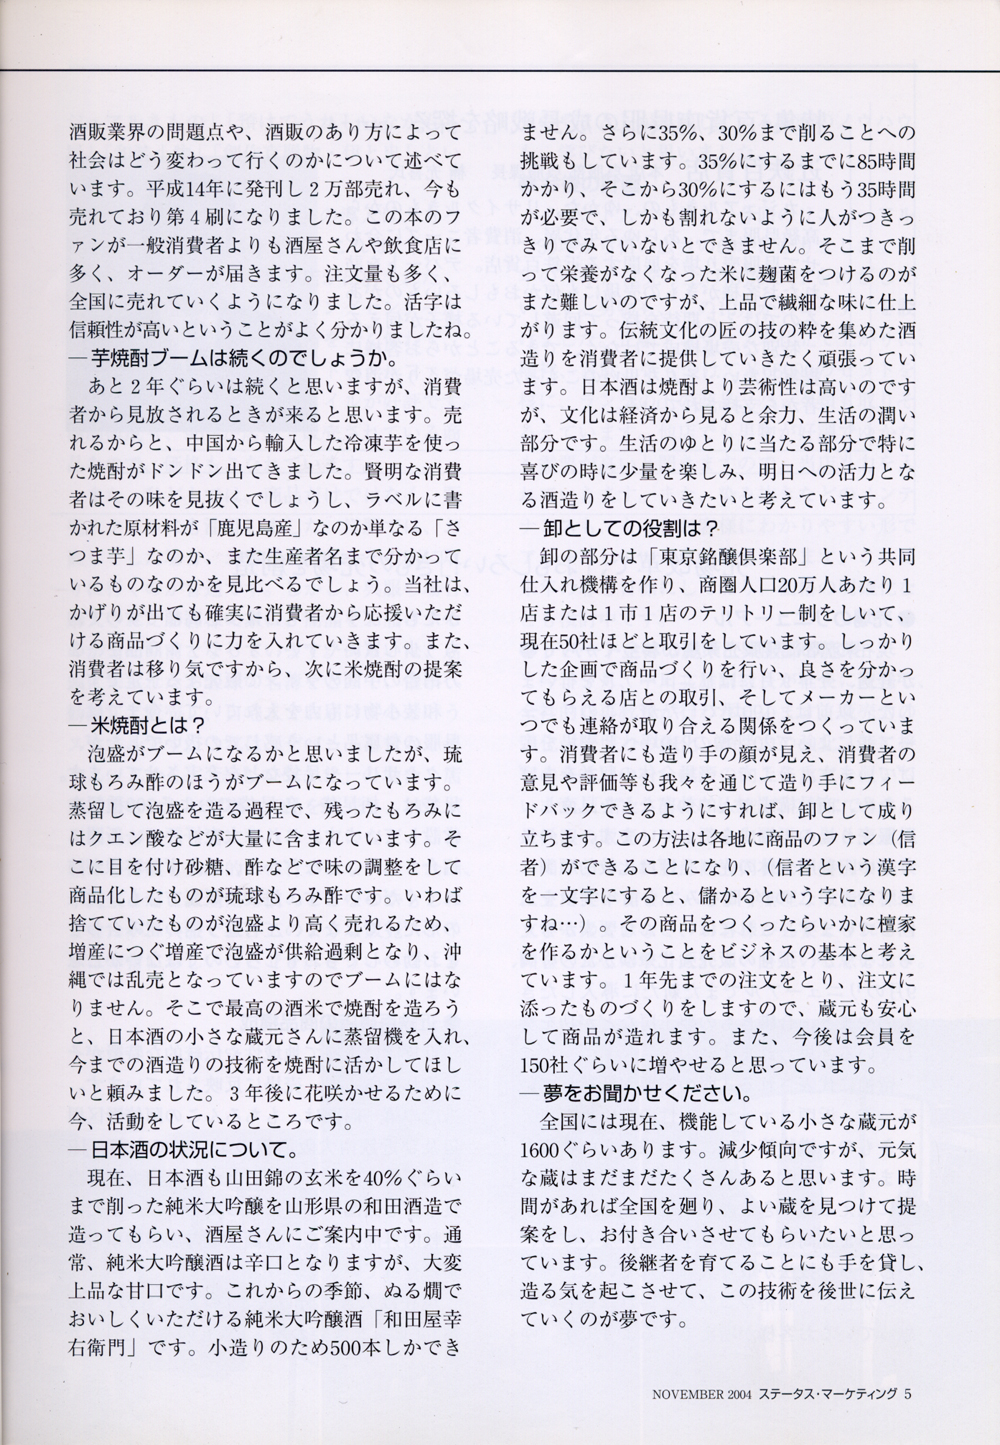 2004年11月 きものと宝飾社 「月刊ステータス・マーケティング」 トップインタビュー